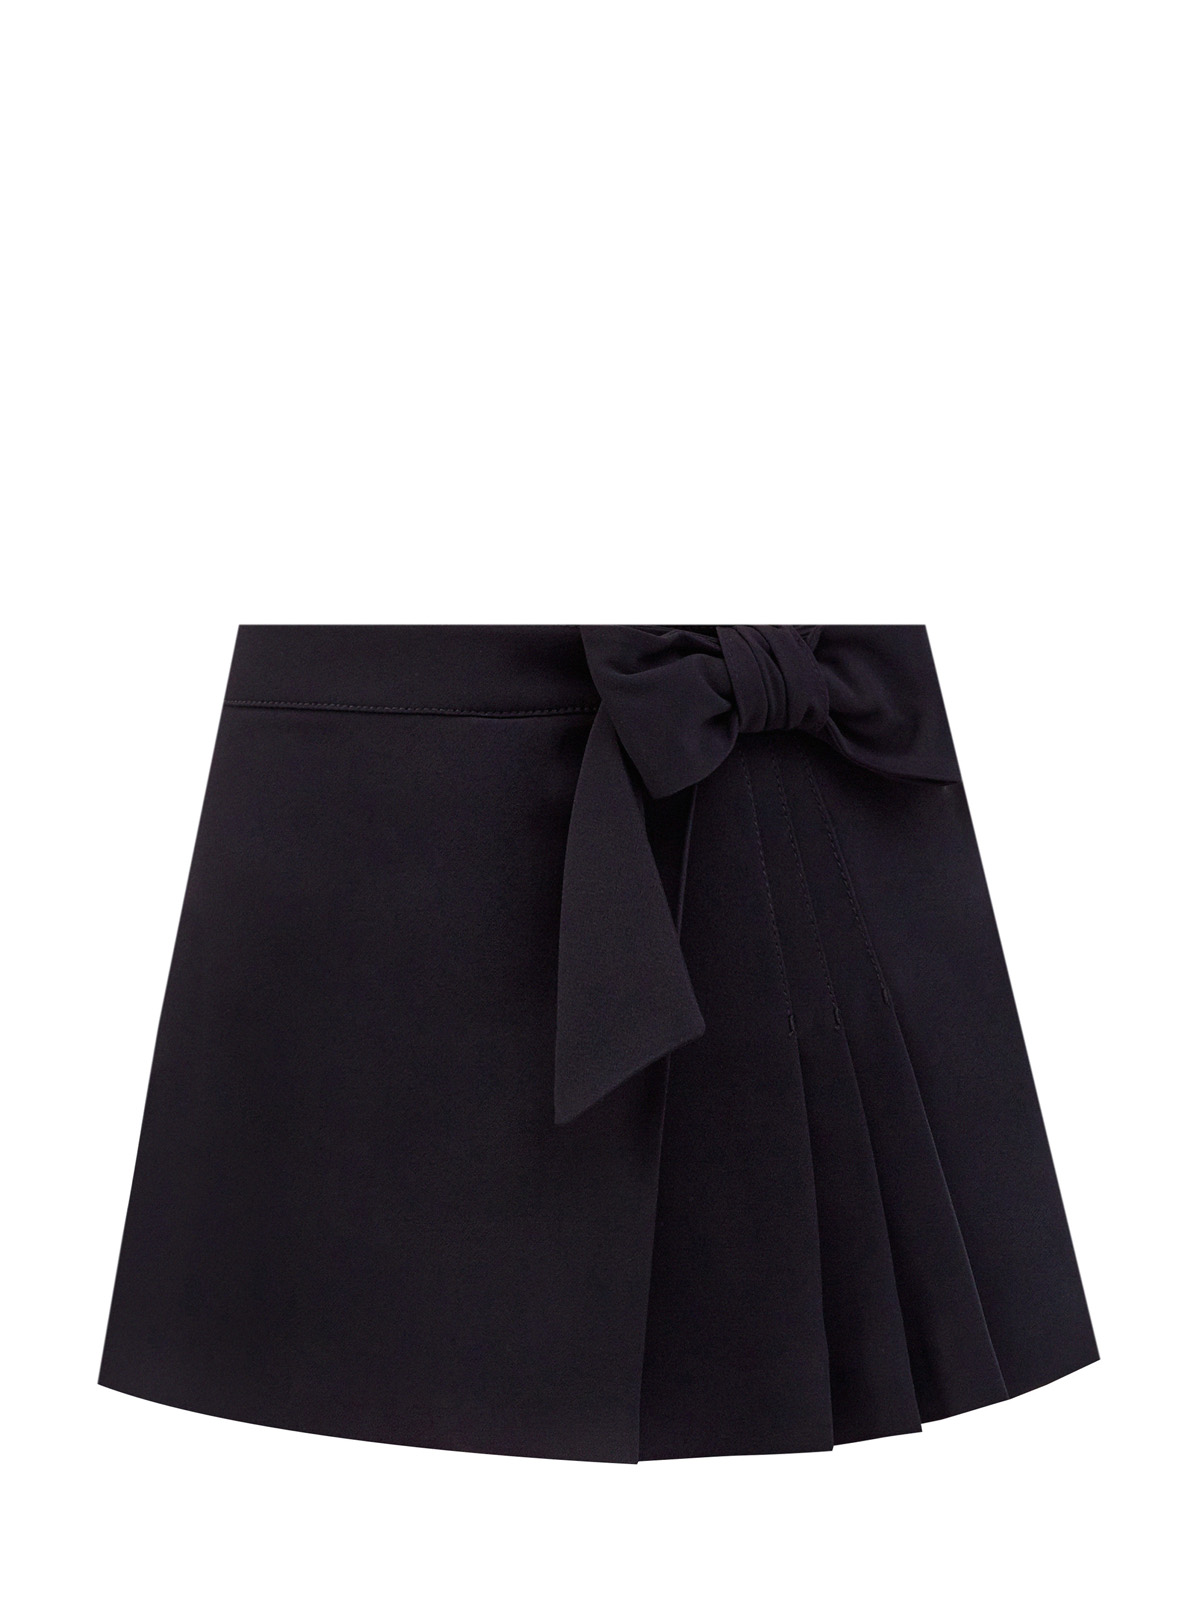 Однотонные шорты из фризотина стрейч с эффектом запаха REDVALENTINO, цвет черный, размер M;S